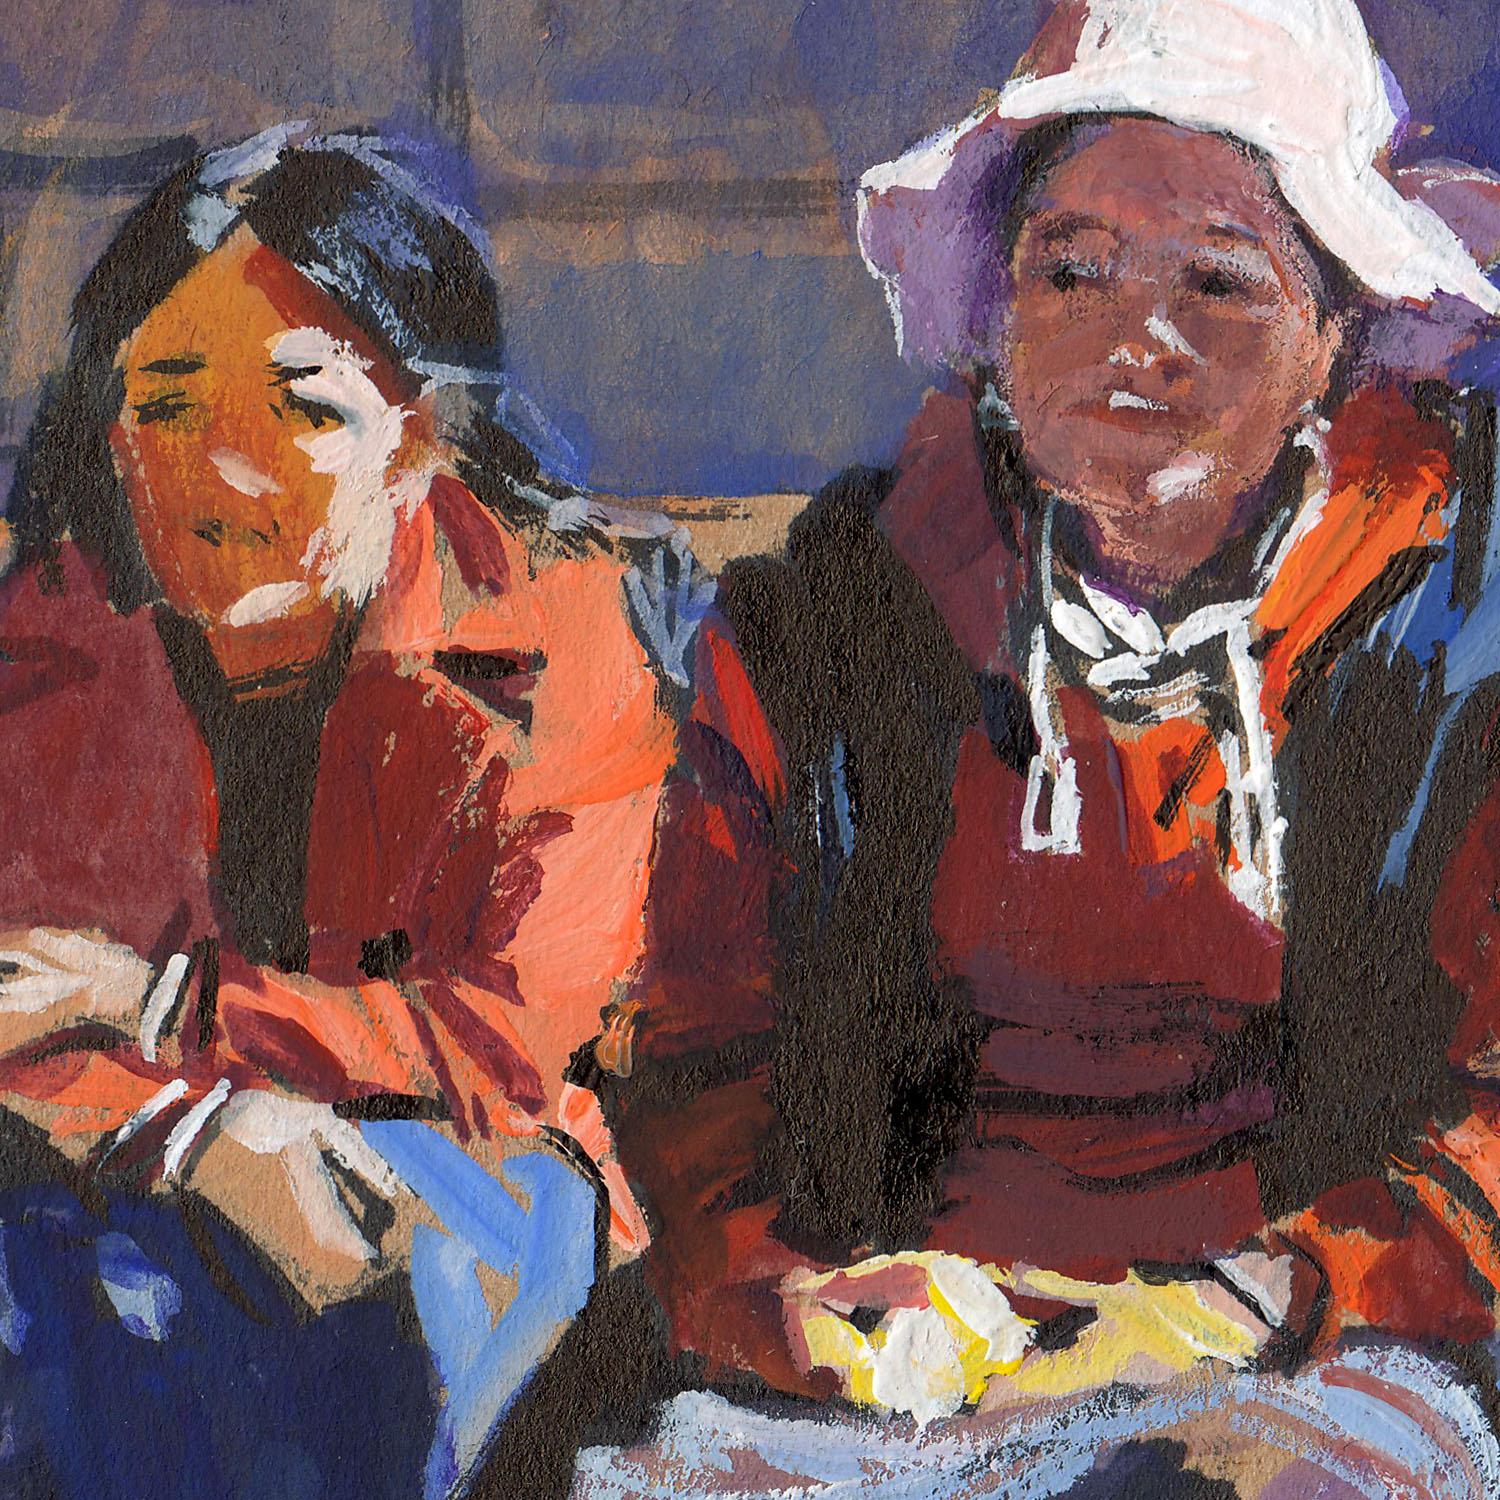 The Girls and their Dog in Tibetan village (sketch) - Art by Evgeniy Monahov